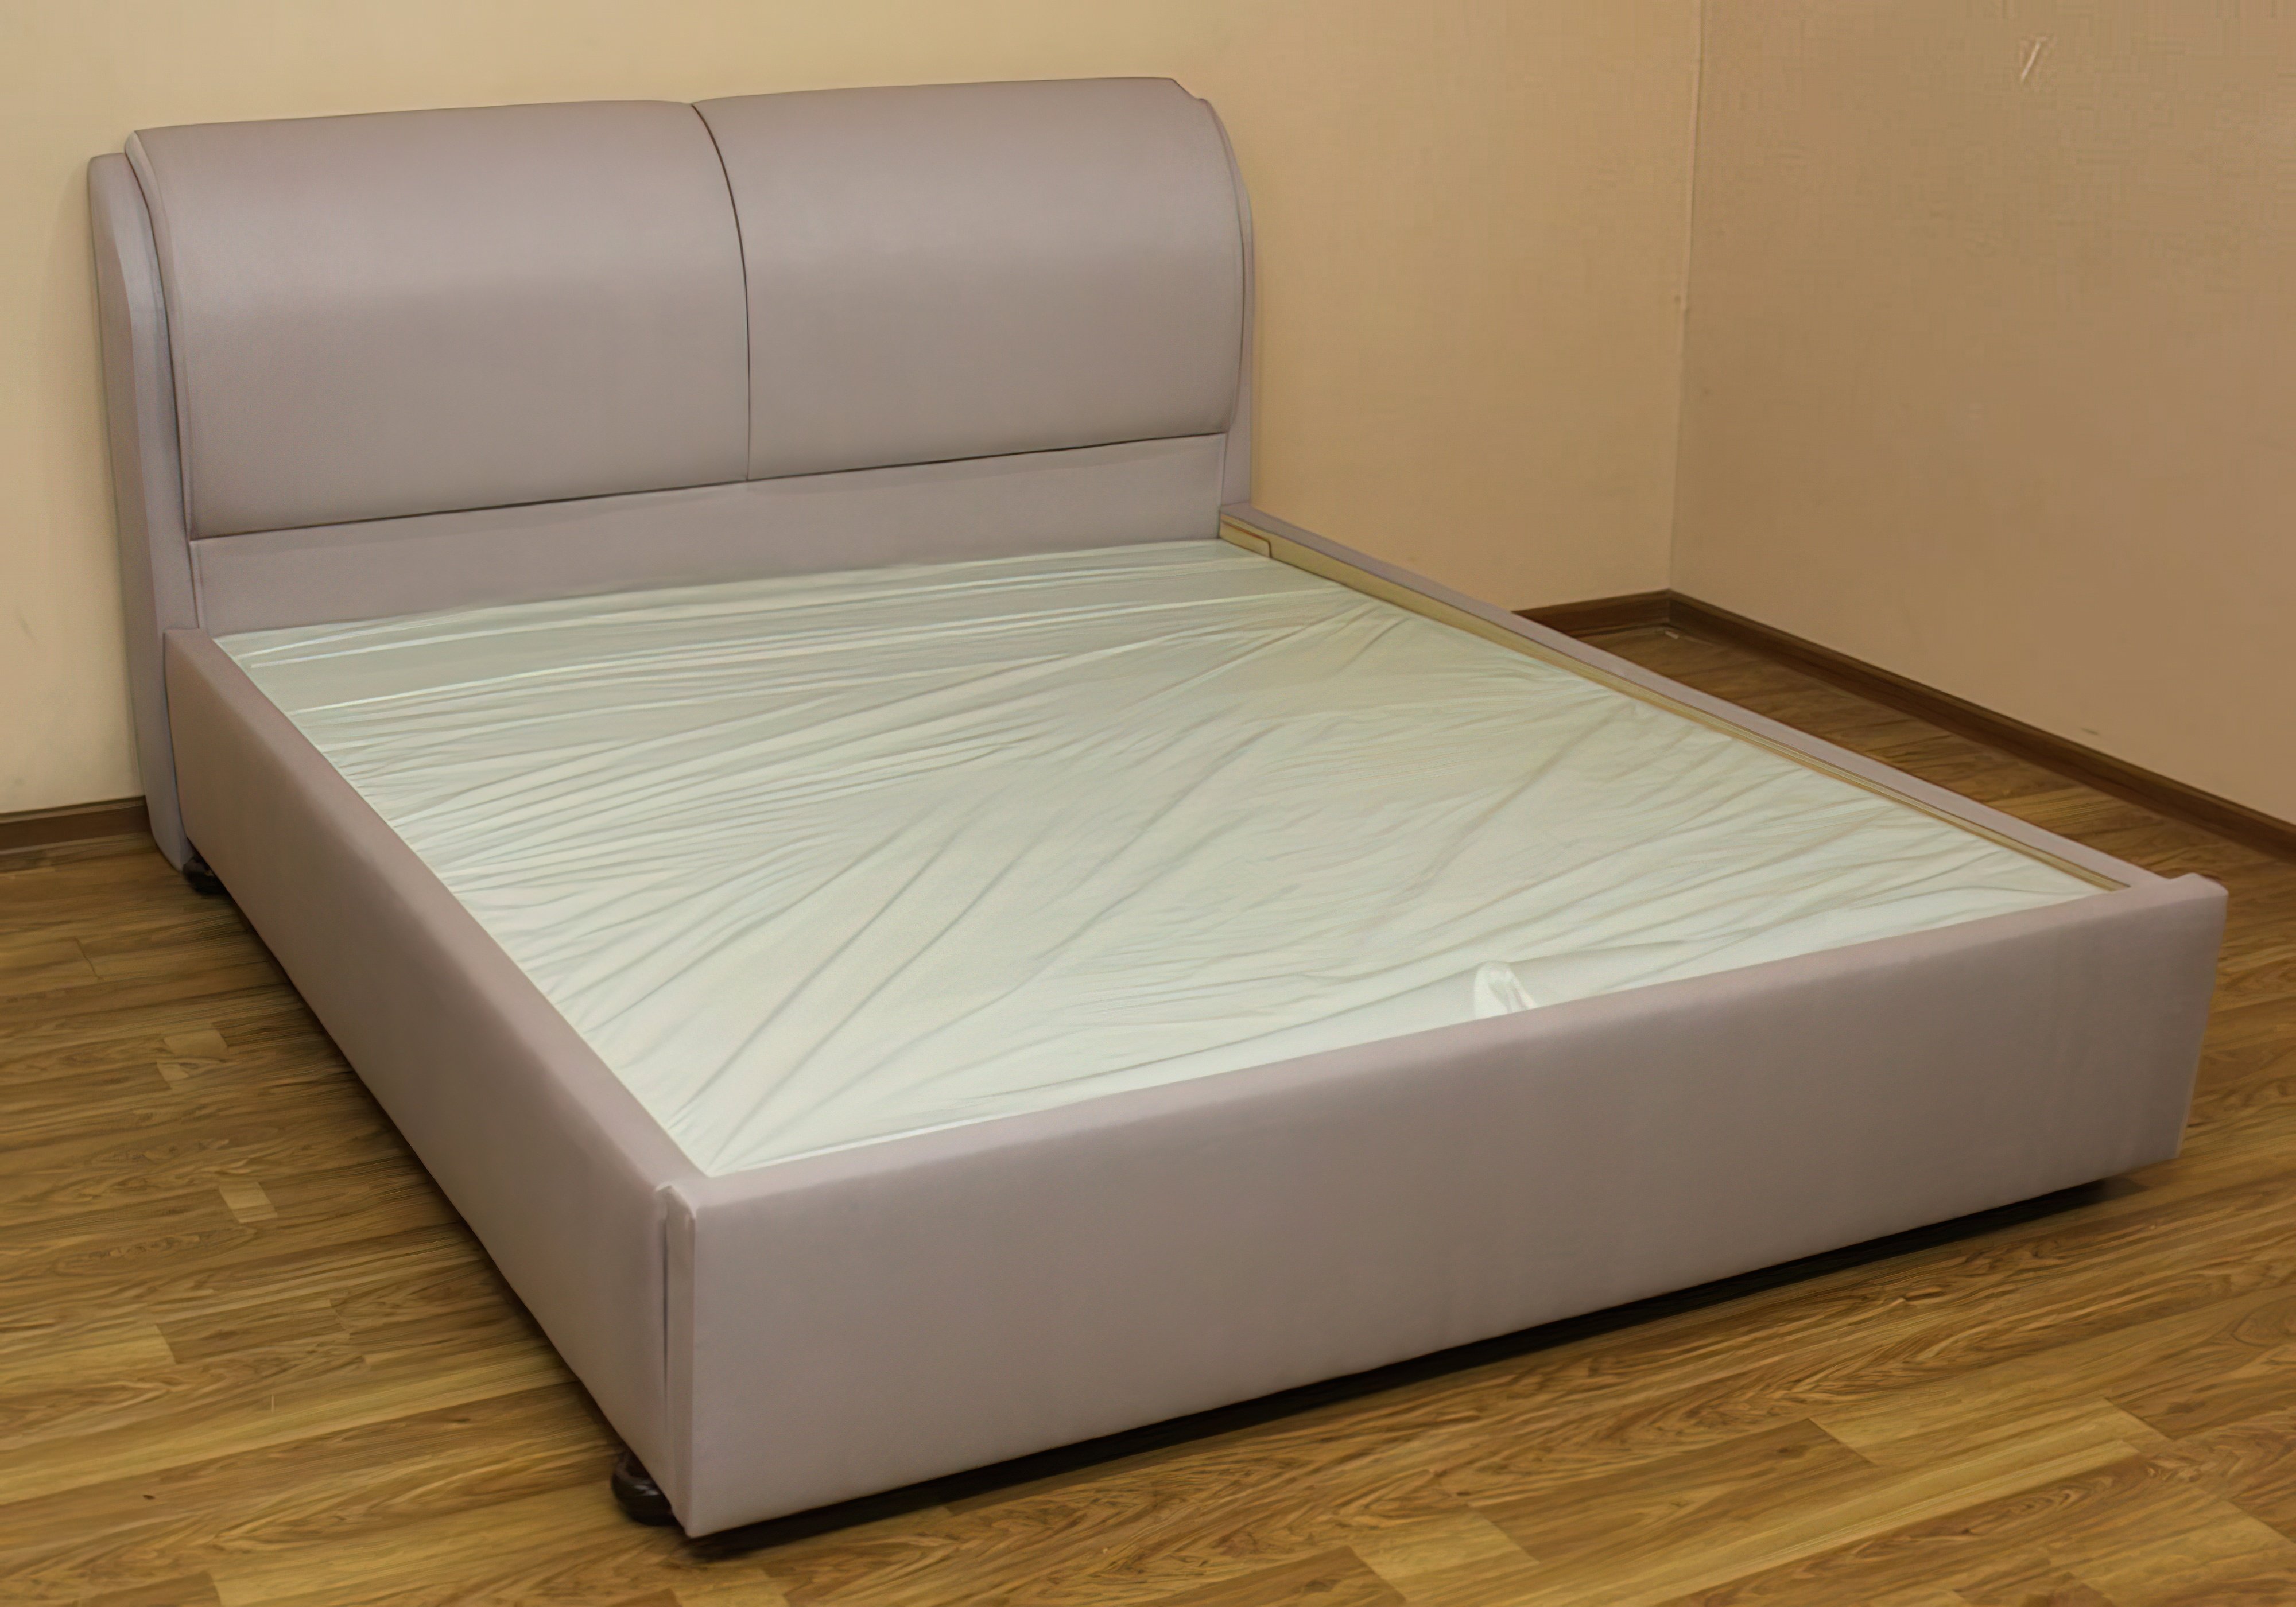  Купить Кровати с подъемным механизмом Кровать с подъемным механизмо "Афина" Катунь